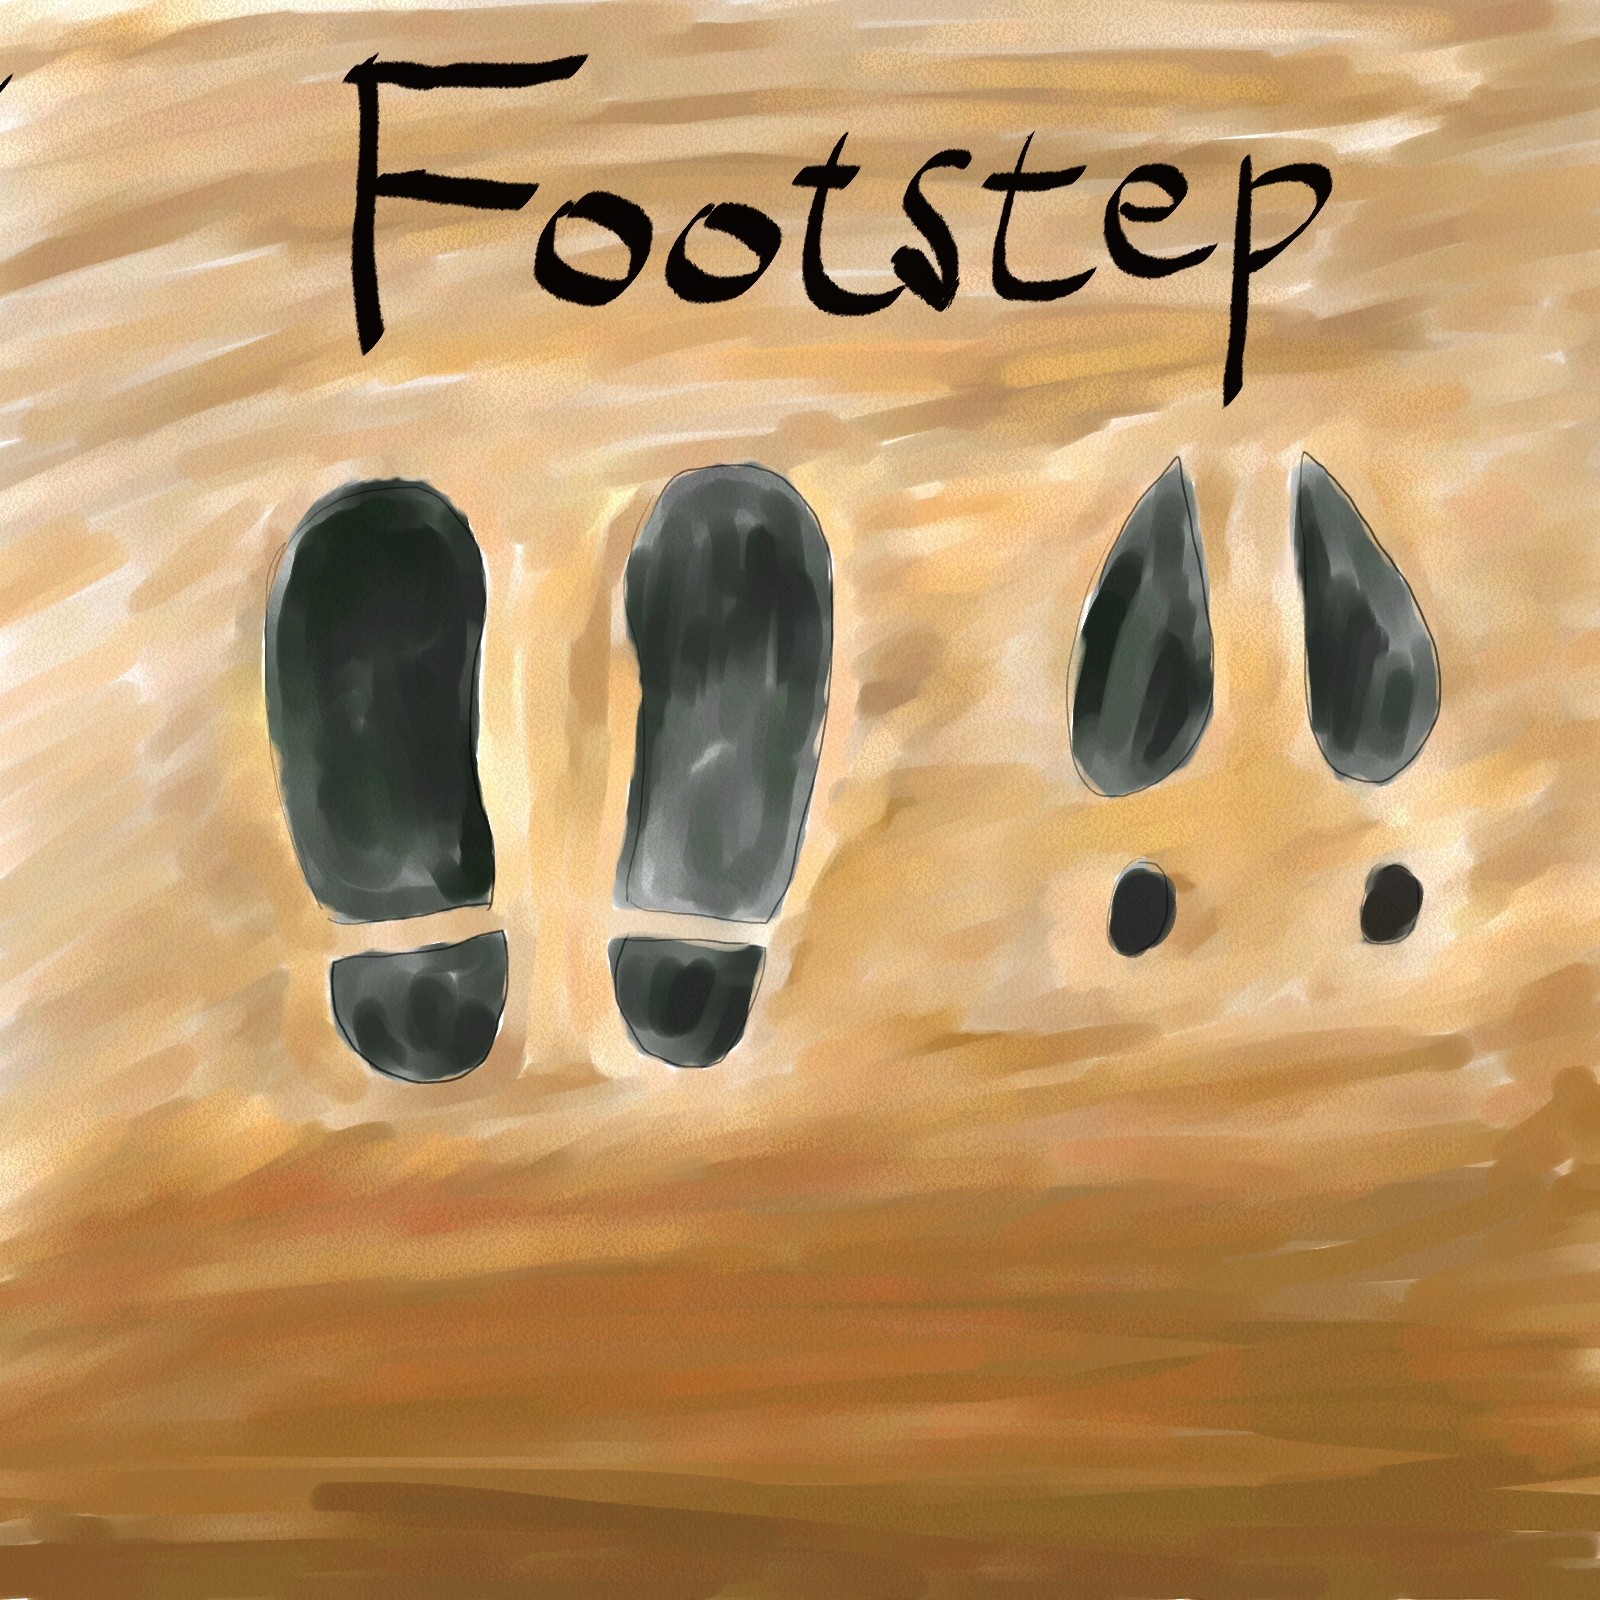 Footstep